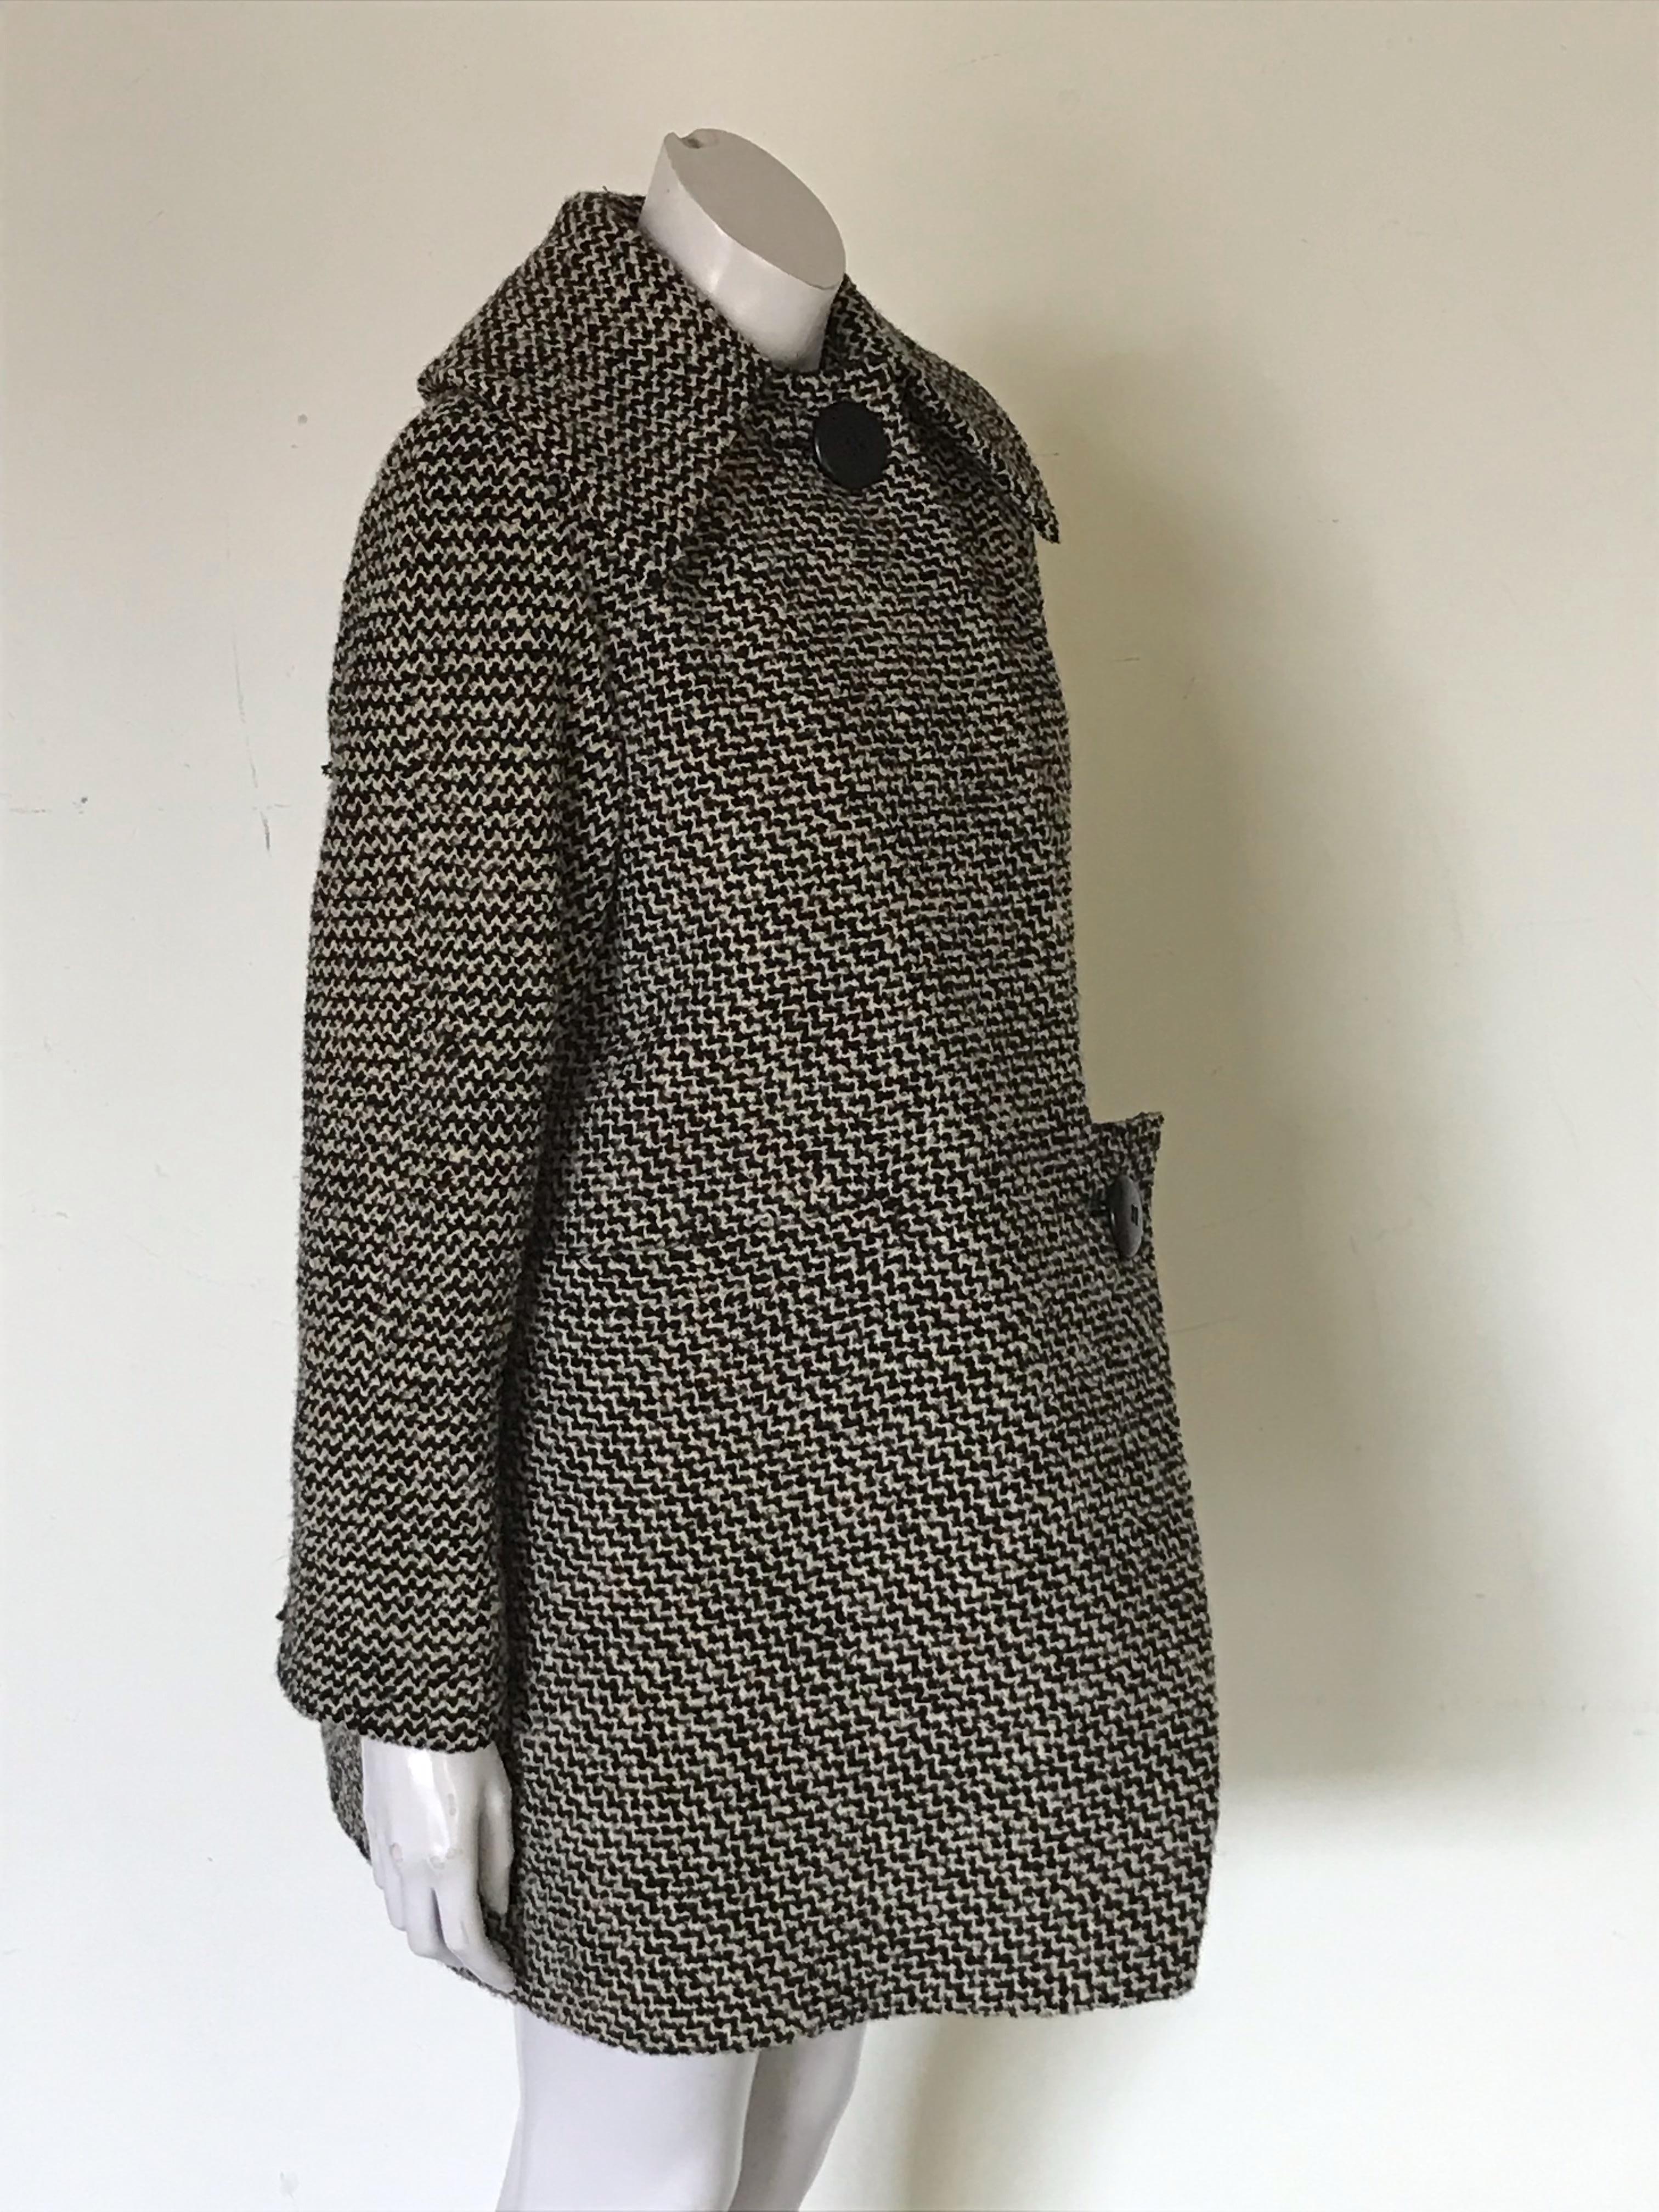 Il s'agit d'un ensemble manteau et robe deux pièces de Pauline Trigere, qui semble dater des années 1960.

Le manteau présente un devant asymétrique, une fermeture à deux boutons, deux poches frontales horizontales.

La robe, de longueur mi-mollet,